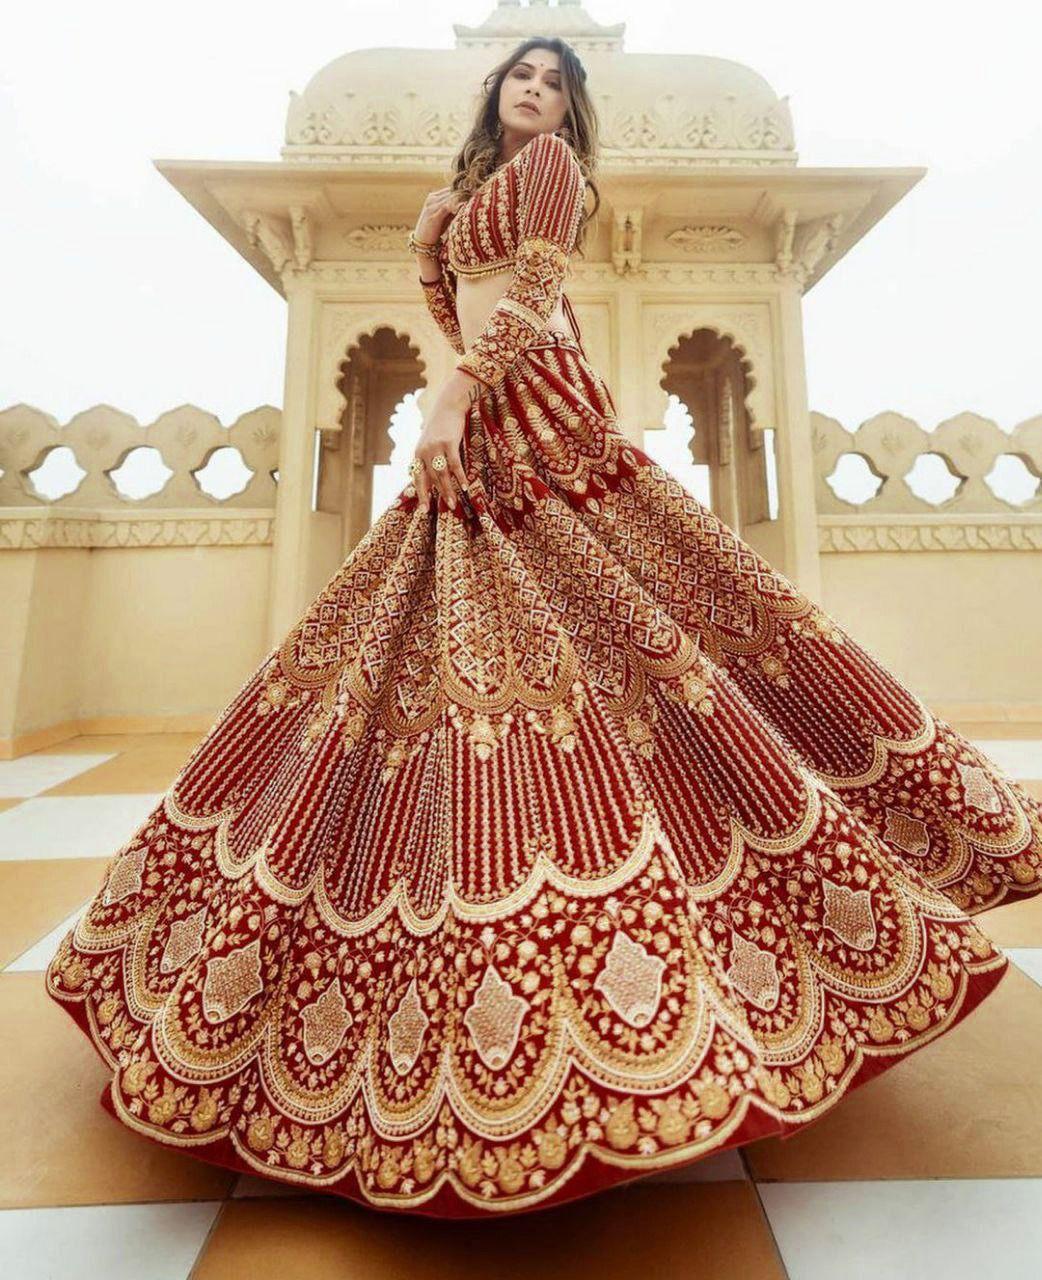 Breathtaking Manish Malhotra Designs You'll Want!